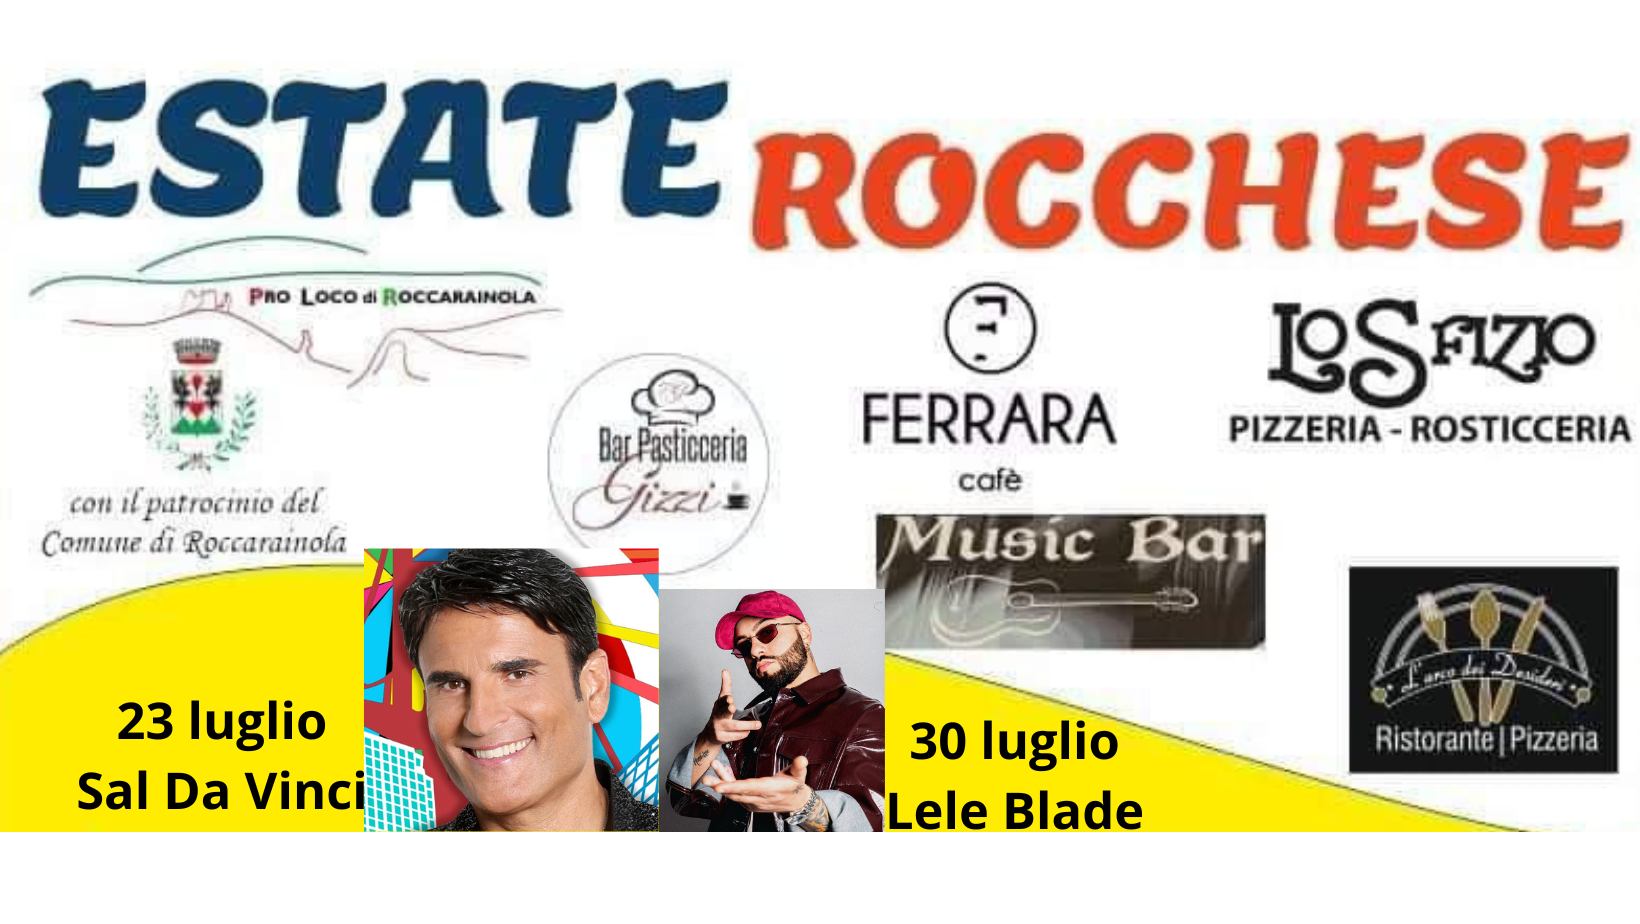 Roccarainola, L'estate Rocchese:con Sal Da Vinci e Lele Blade